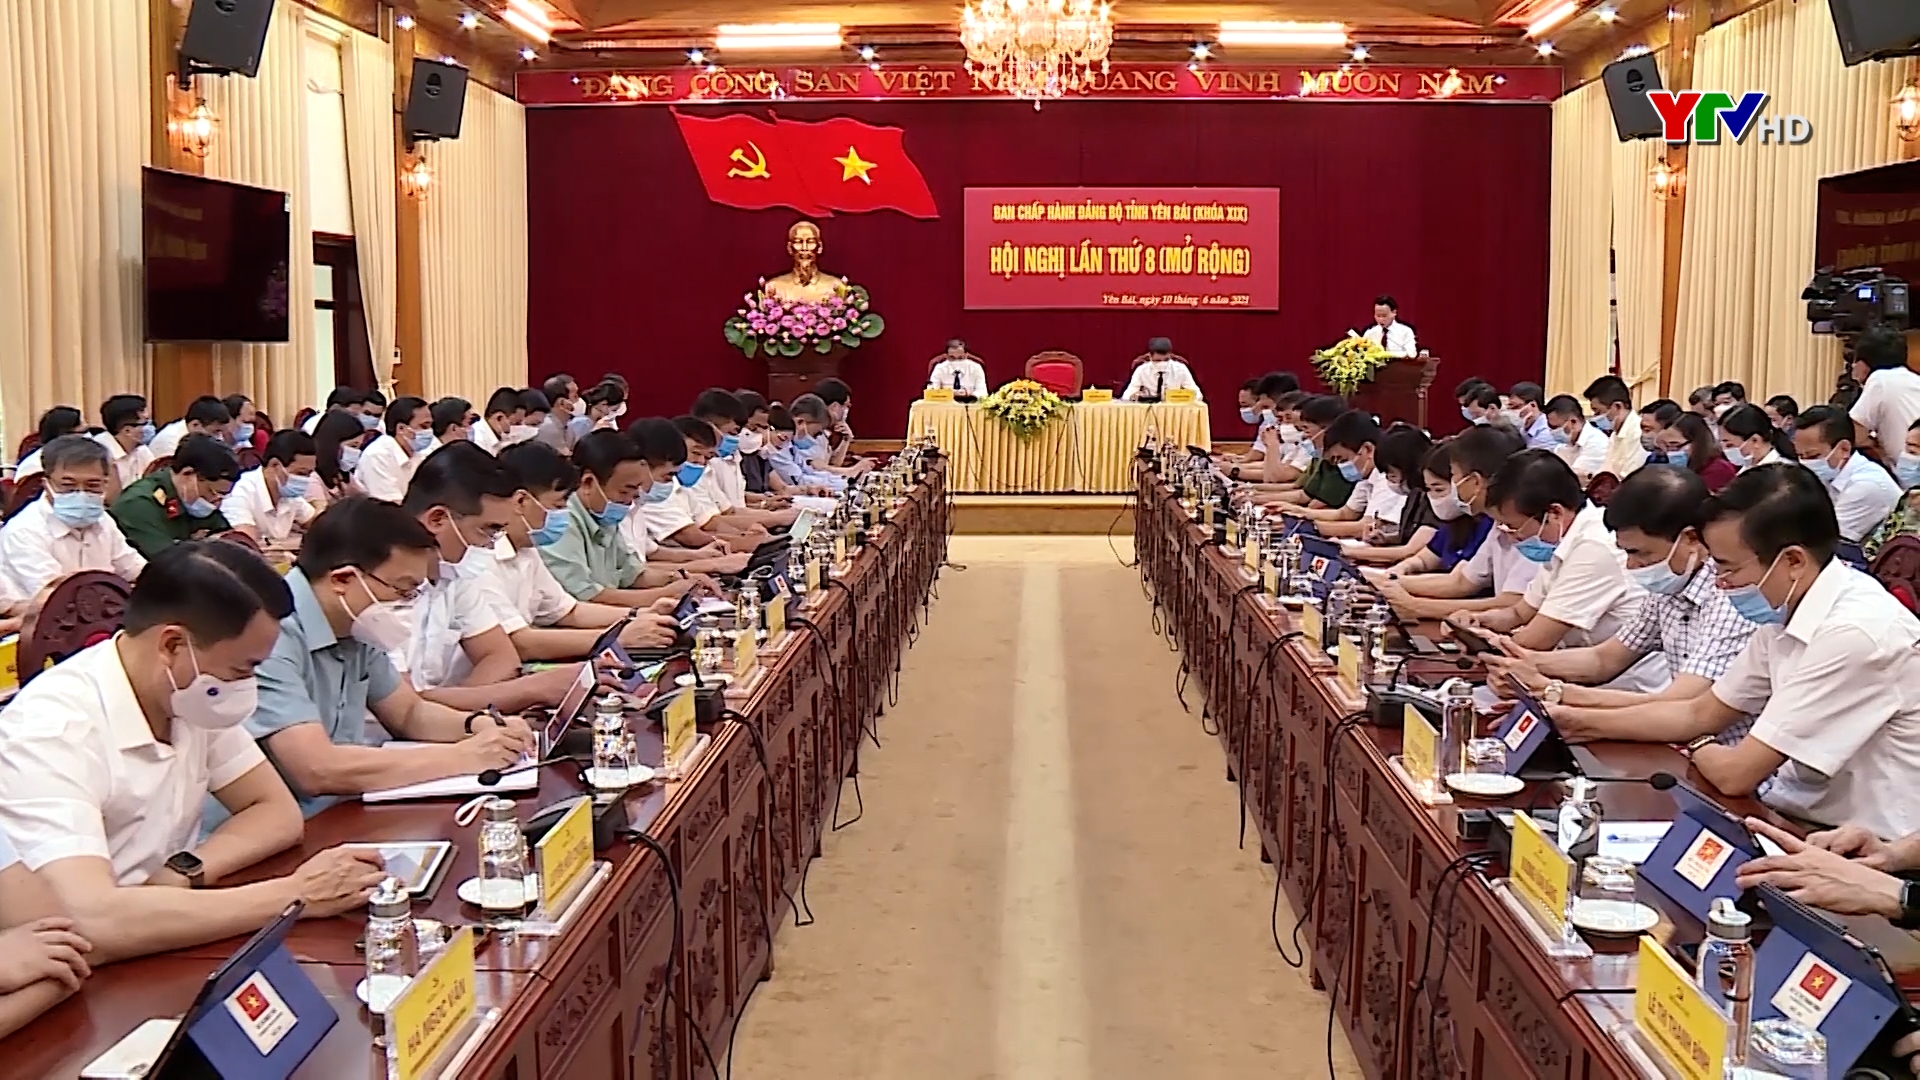 Khai mạc Hội nghị Ban Chấp hành Đảng bộ tỉnh Yên Bái lần thứ 8 ( mở rộng)